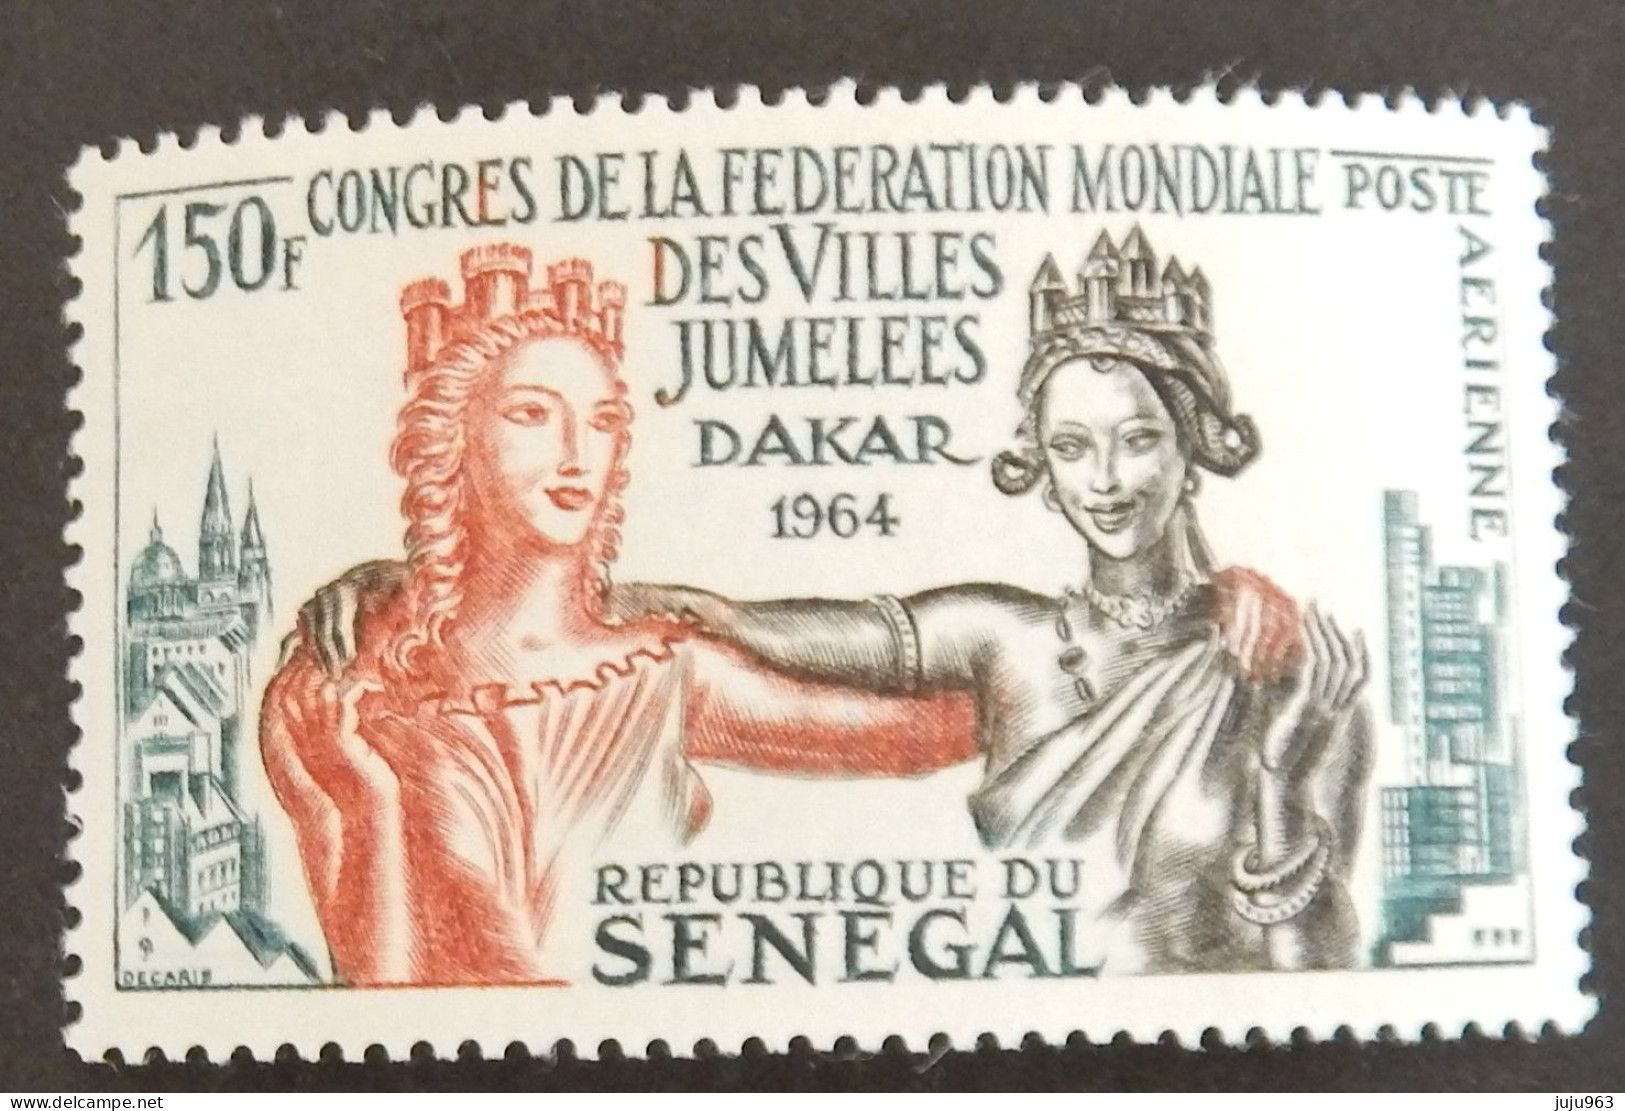 SENEGAL YT PA 41 NEUF**MNH "CONGRES DE LA FEDERATION MONDIALE DES VILLES JUMELEES A DAKAR" ANNÉE 1964 - Senegal (1960-...)